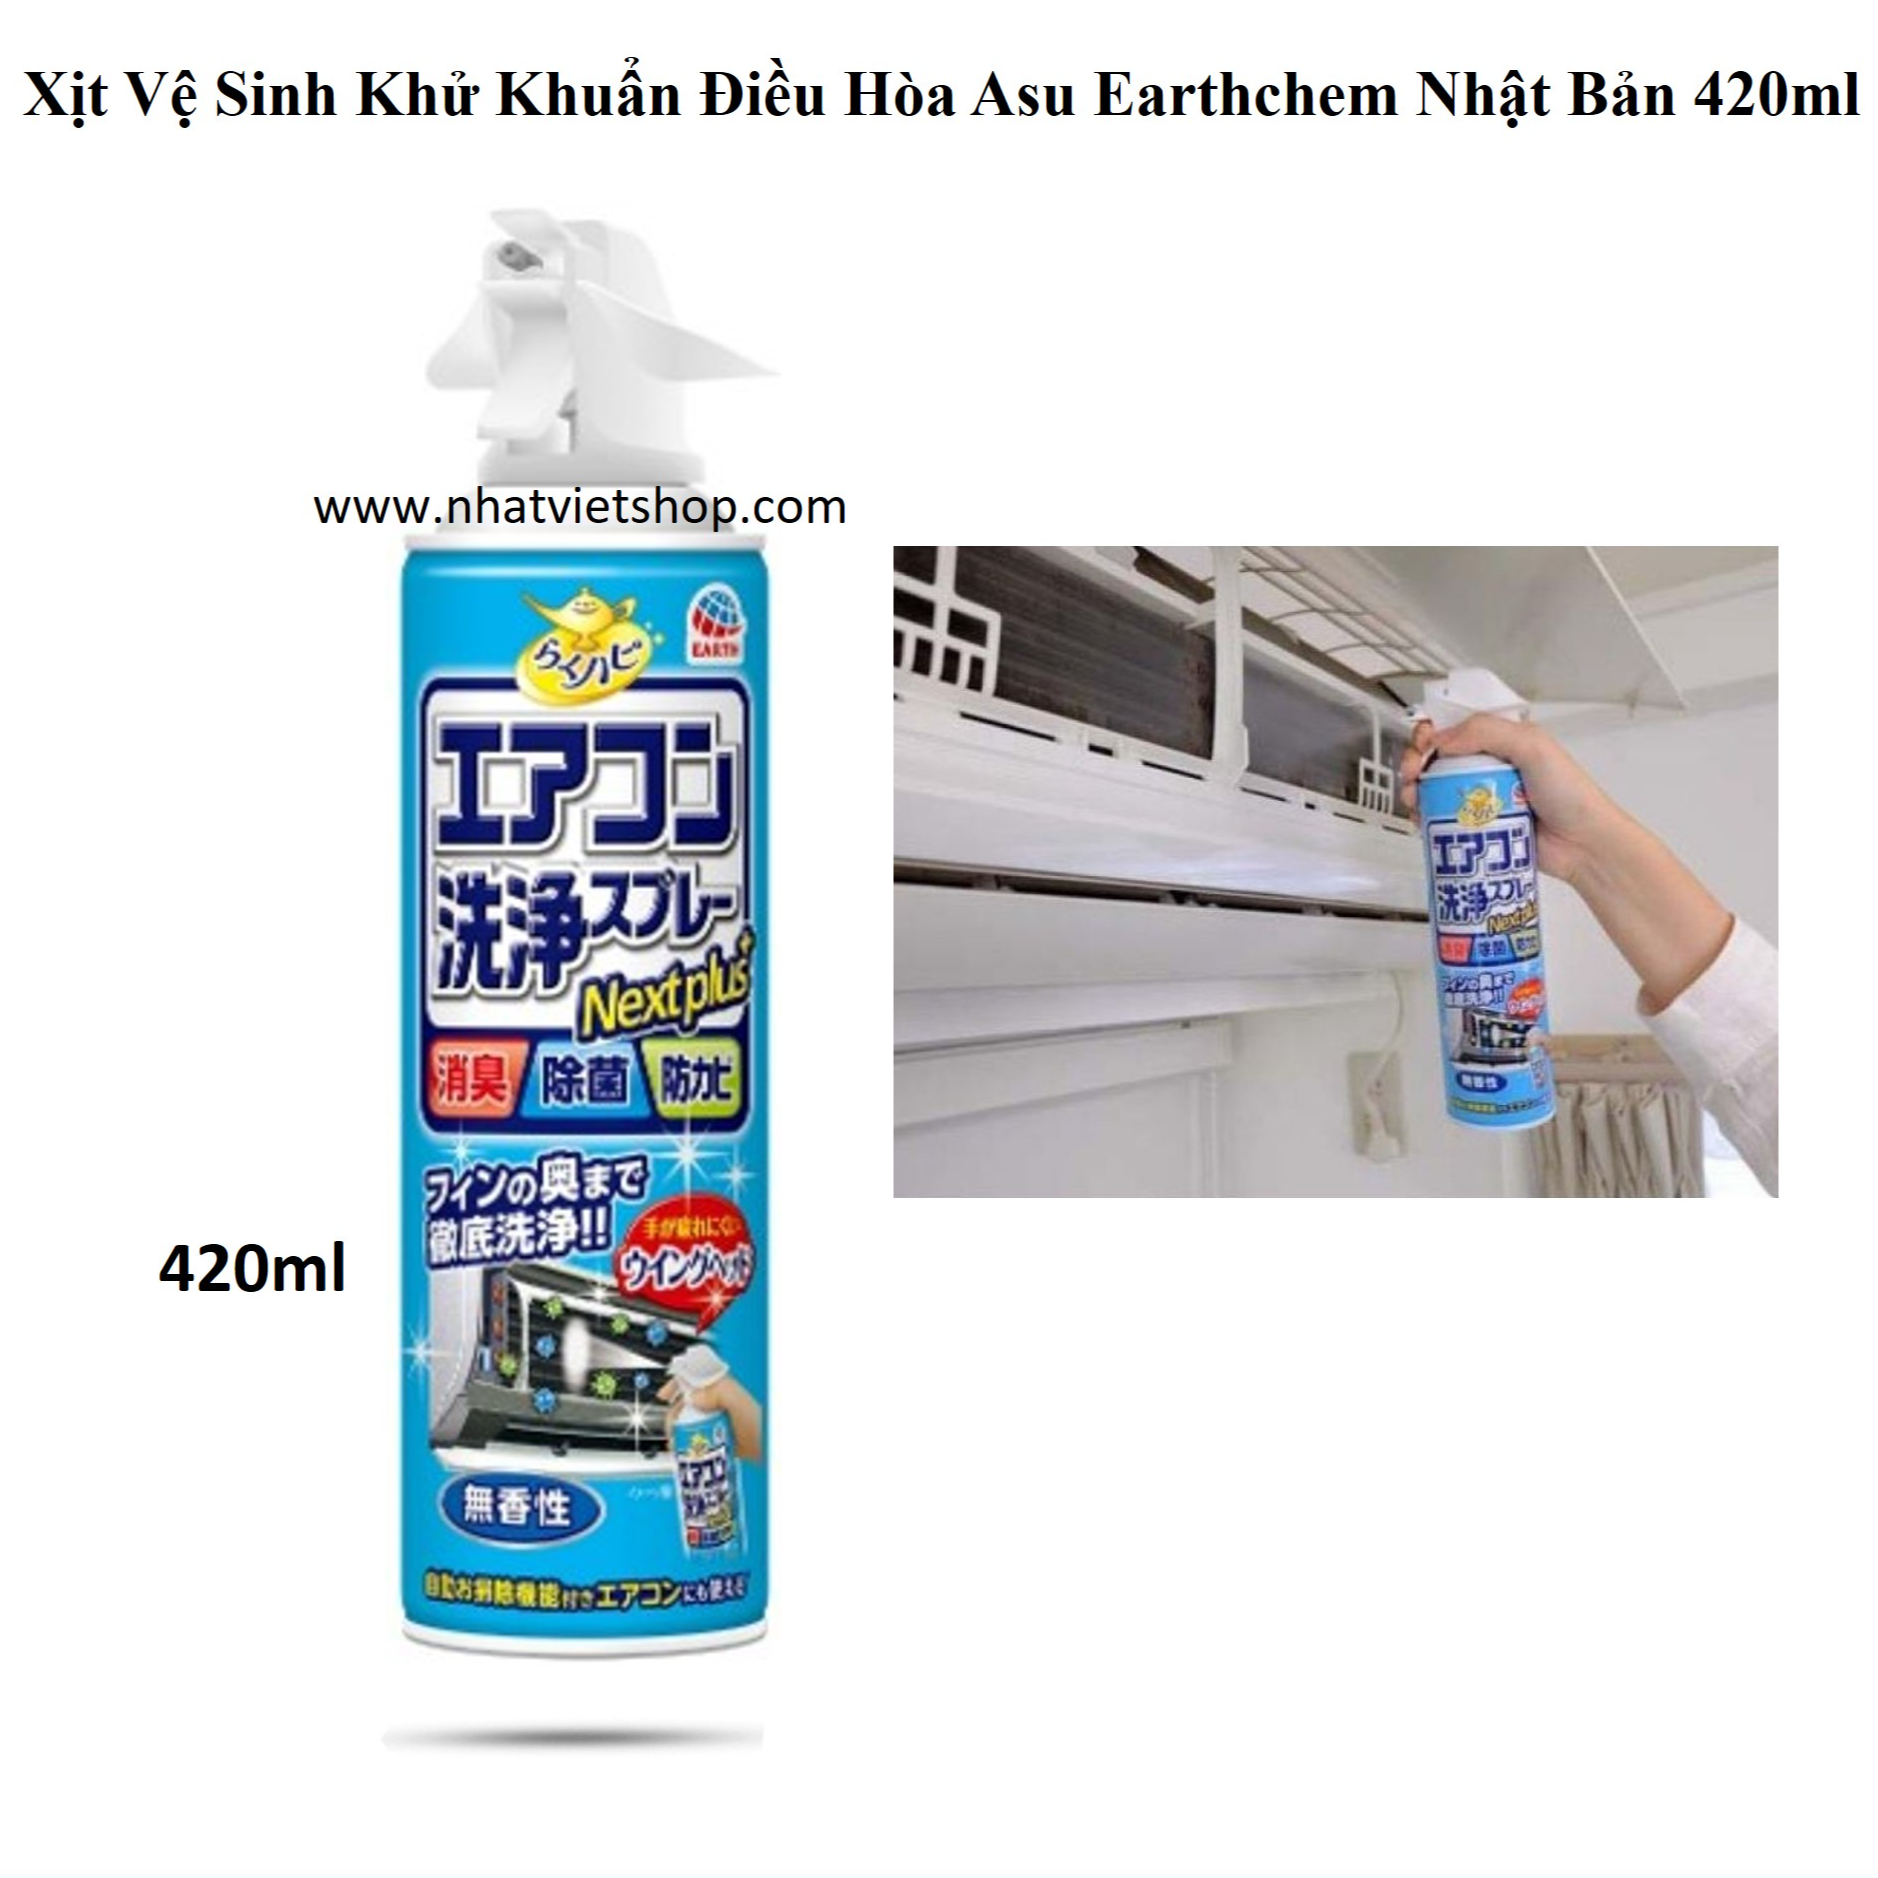 Chai xịt vệ sinh điều hòa 420ml nội địa Nhật Bản